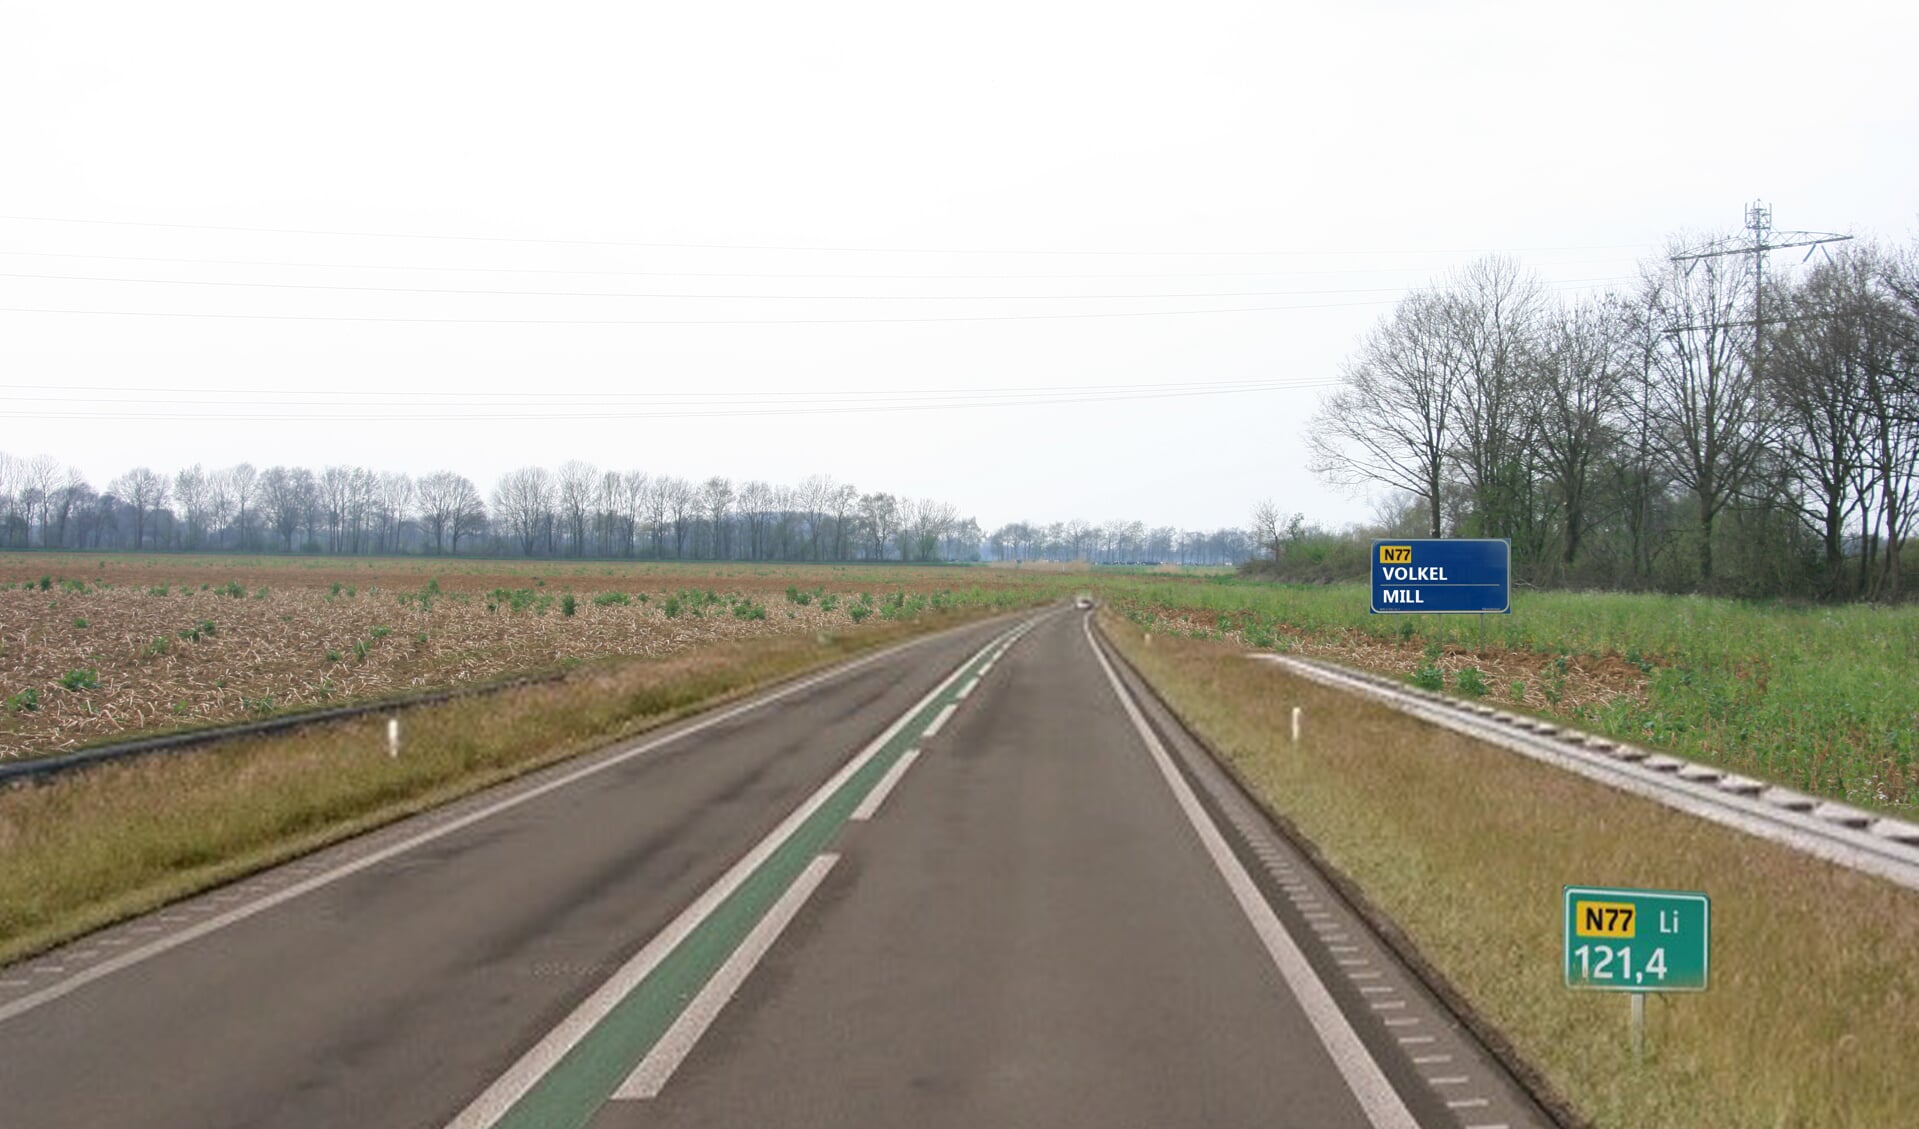 Illustratie van de N77, gezien vanaf knooppunt Rijkevoort in de richting Uden/Mill.